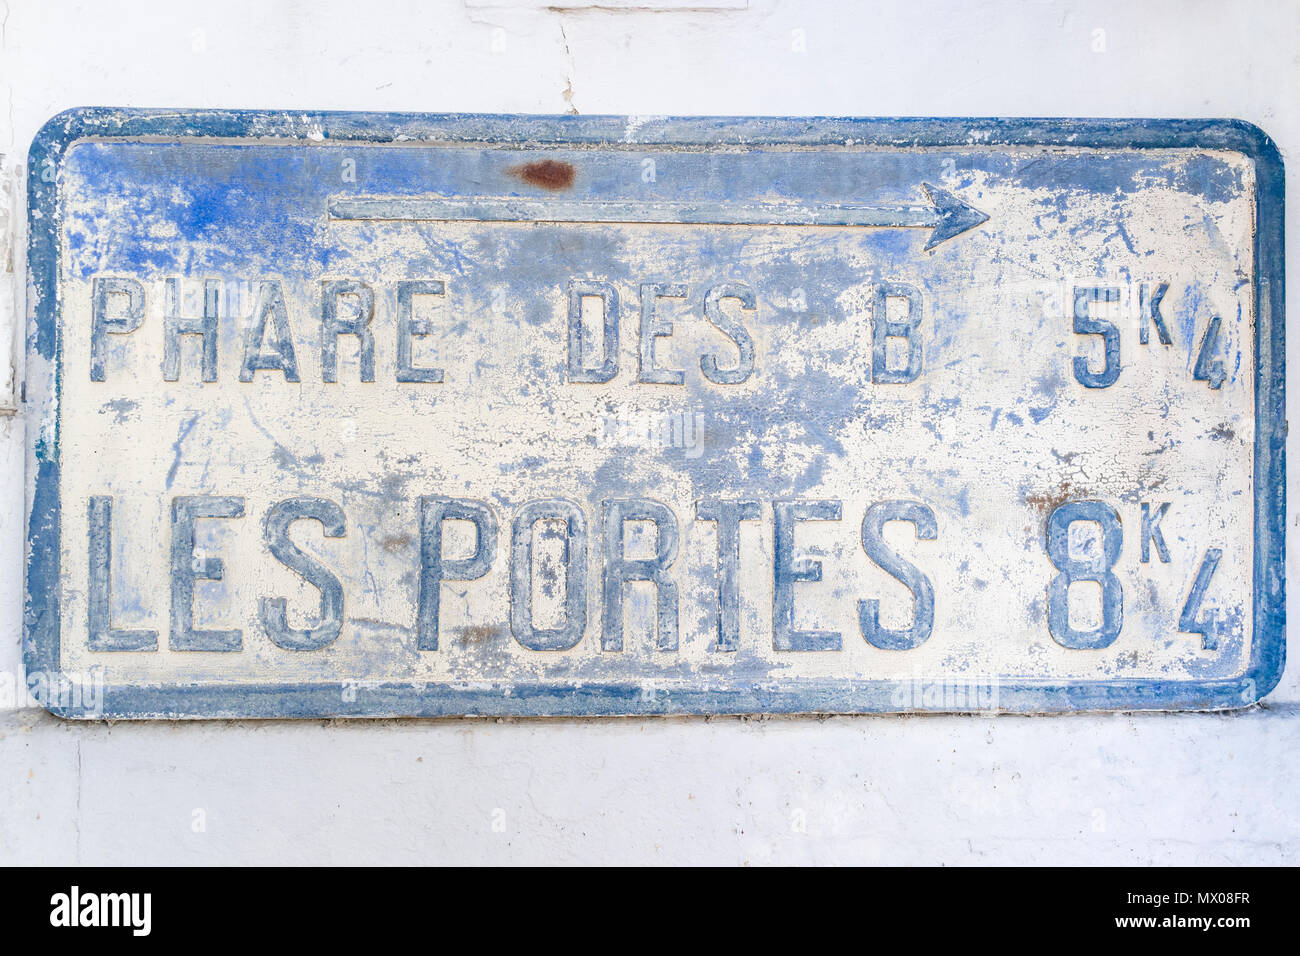 Cartello stradale La direttiva su una parete, antica lastra metallica, Ars en Re, Ile de Re, Charente Maritime, Francia Foto Stock